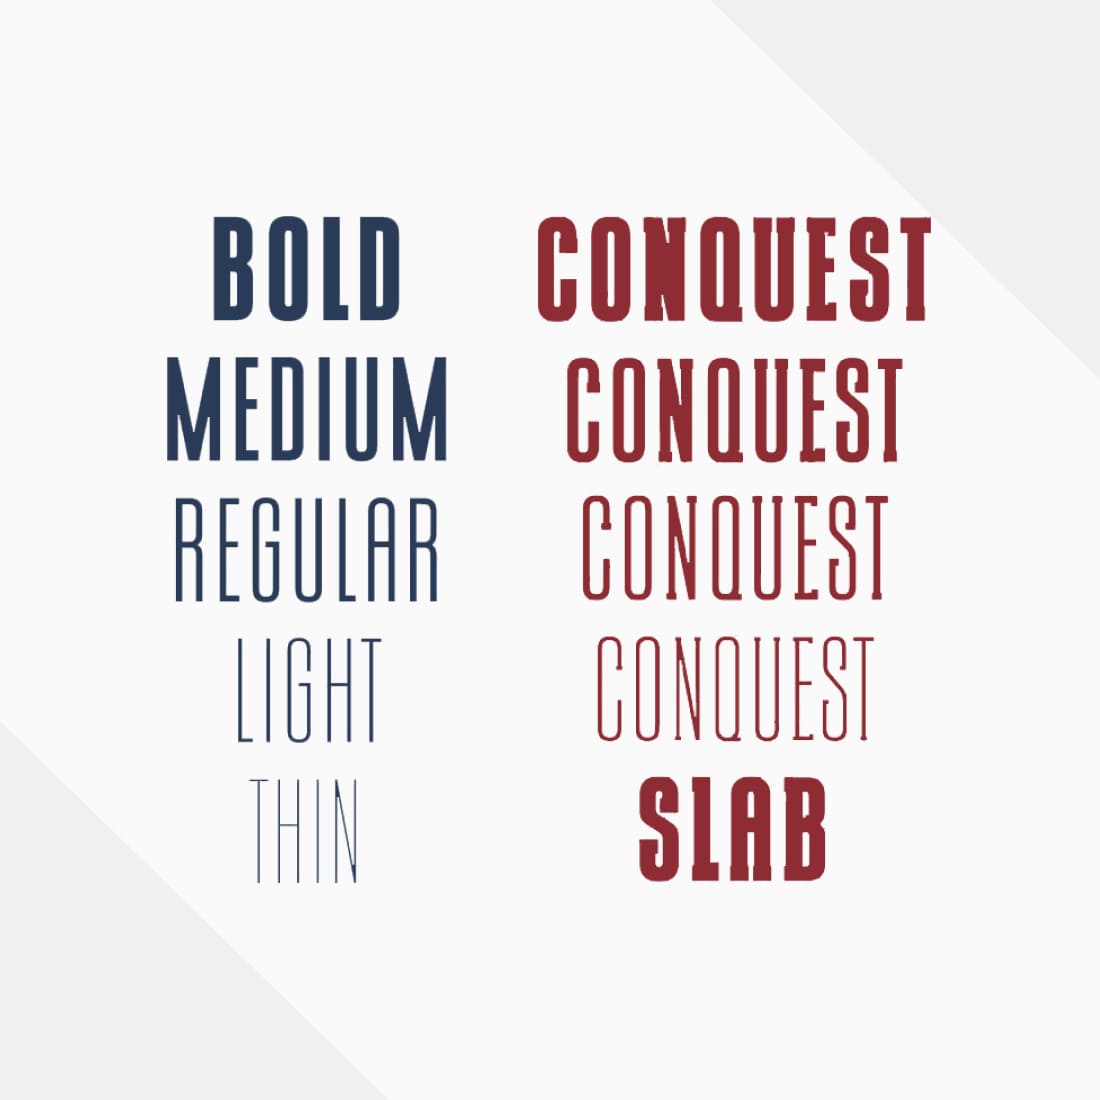 CONQUEST Sans & Slab Serif cover.